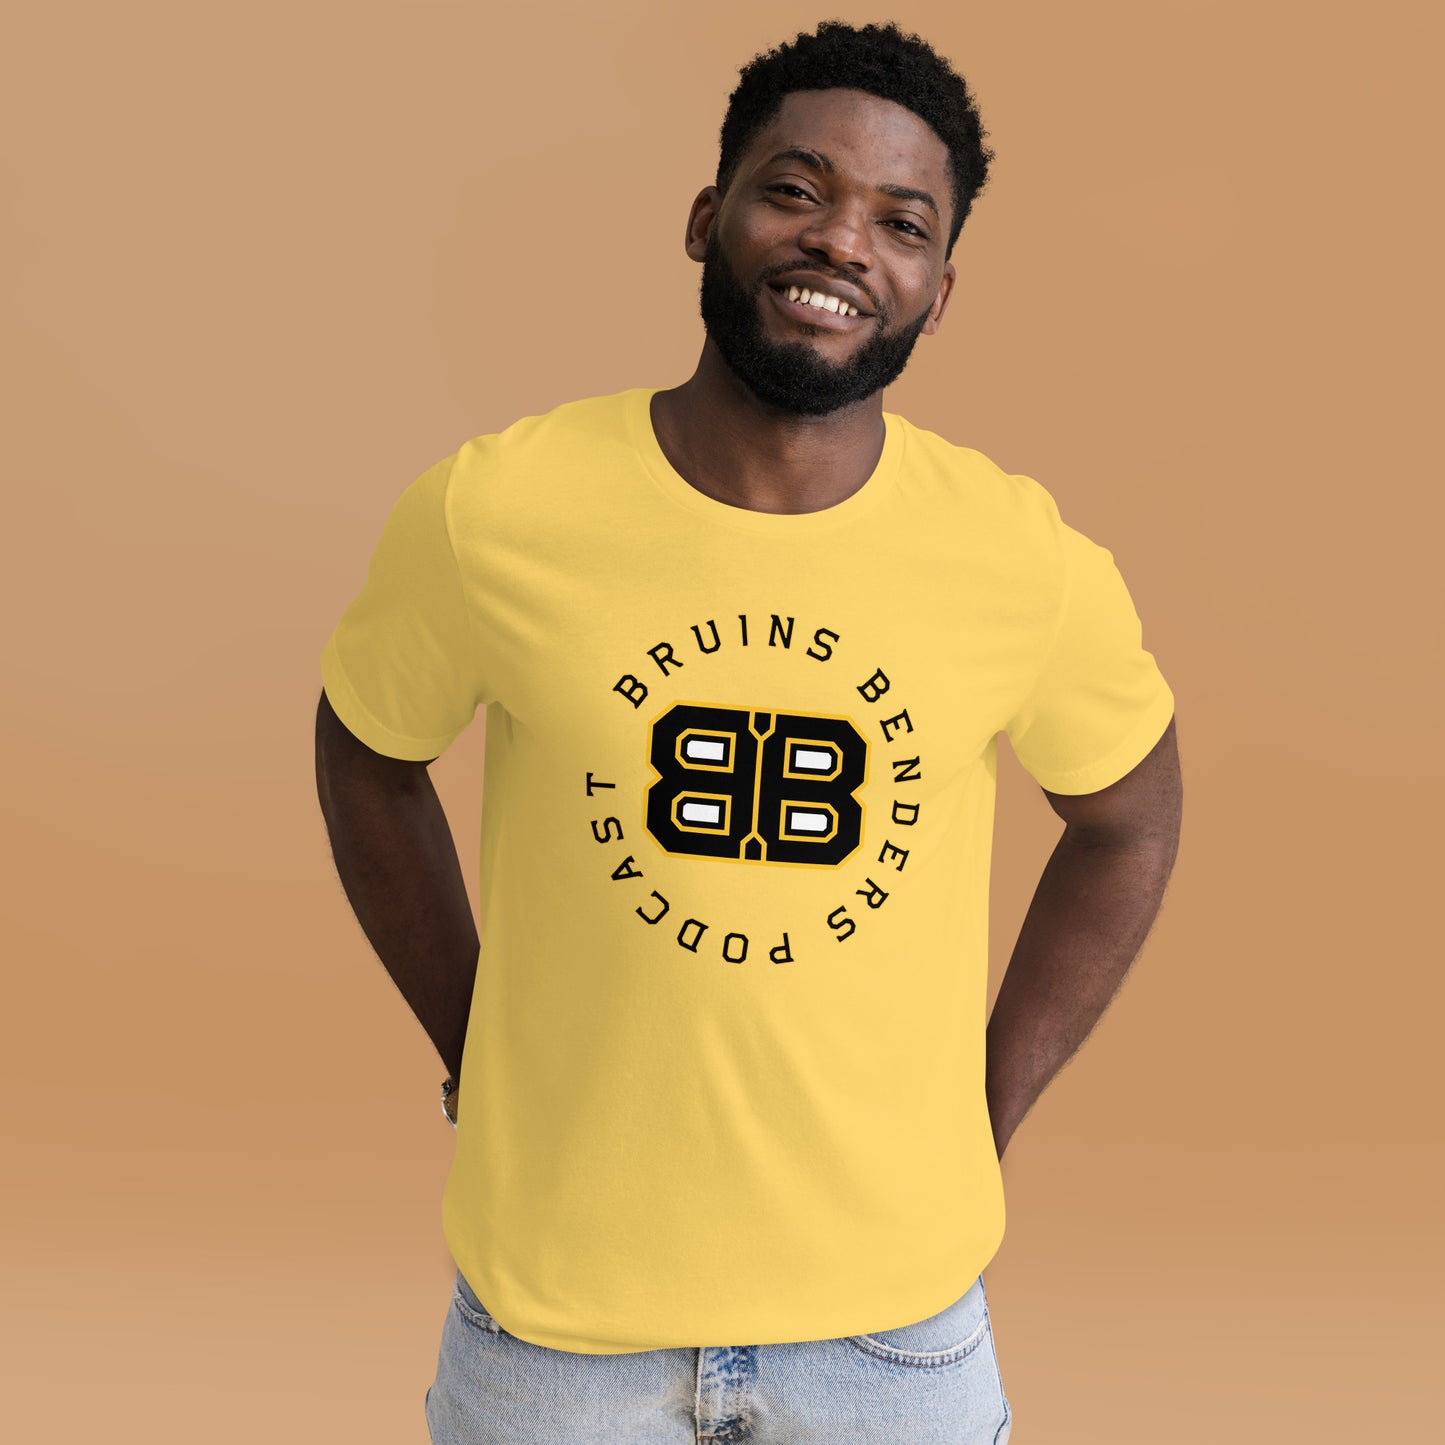 Bruins Benders T-Shirt